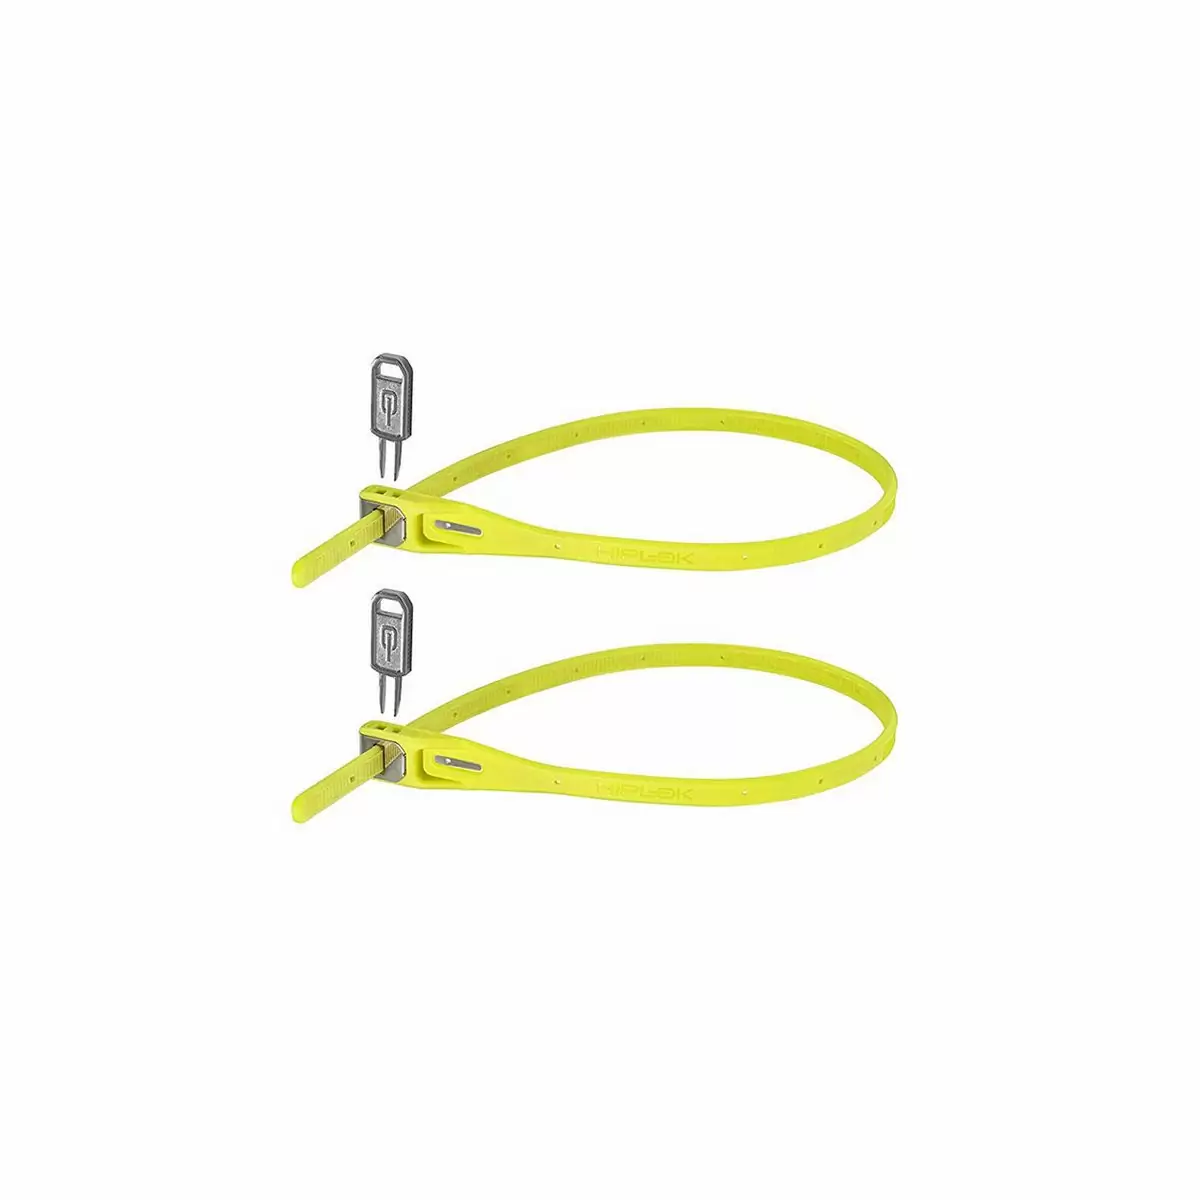 Par cable candado Z Lok con llave amarillo - image